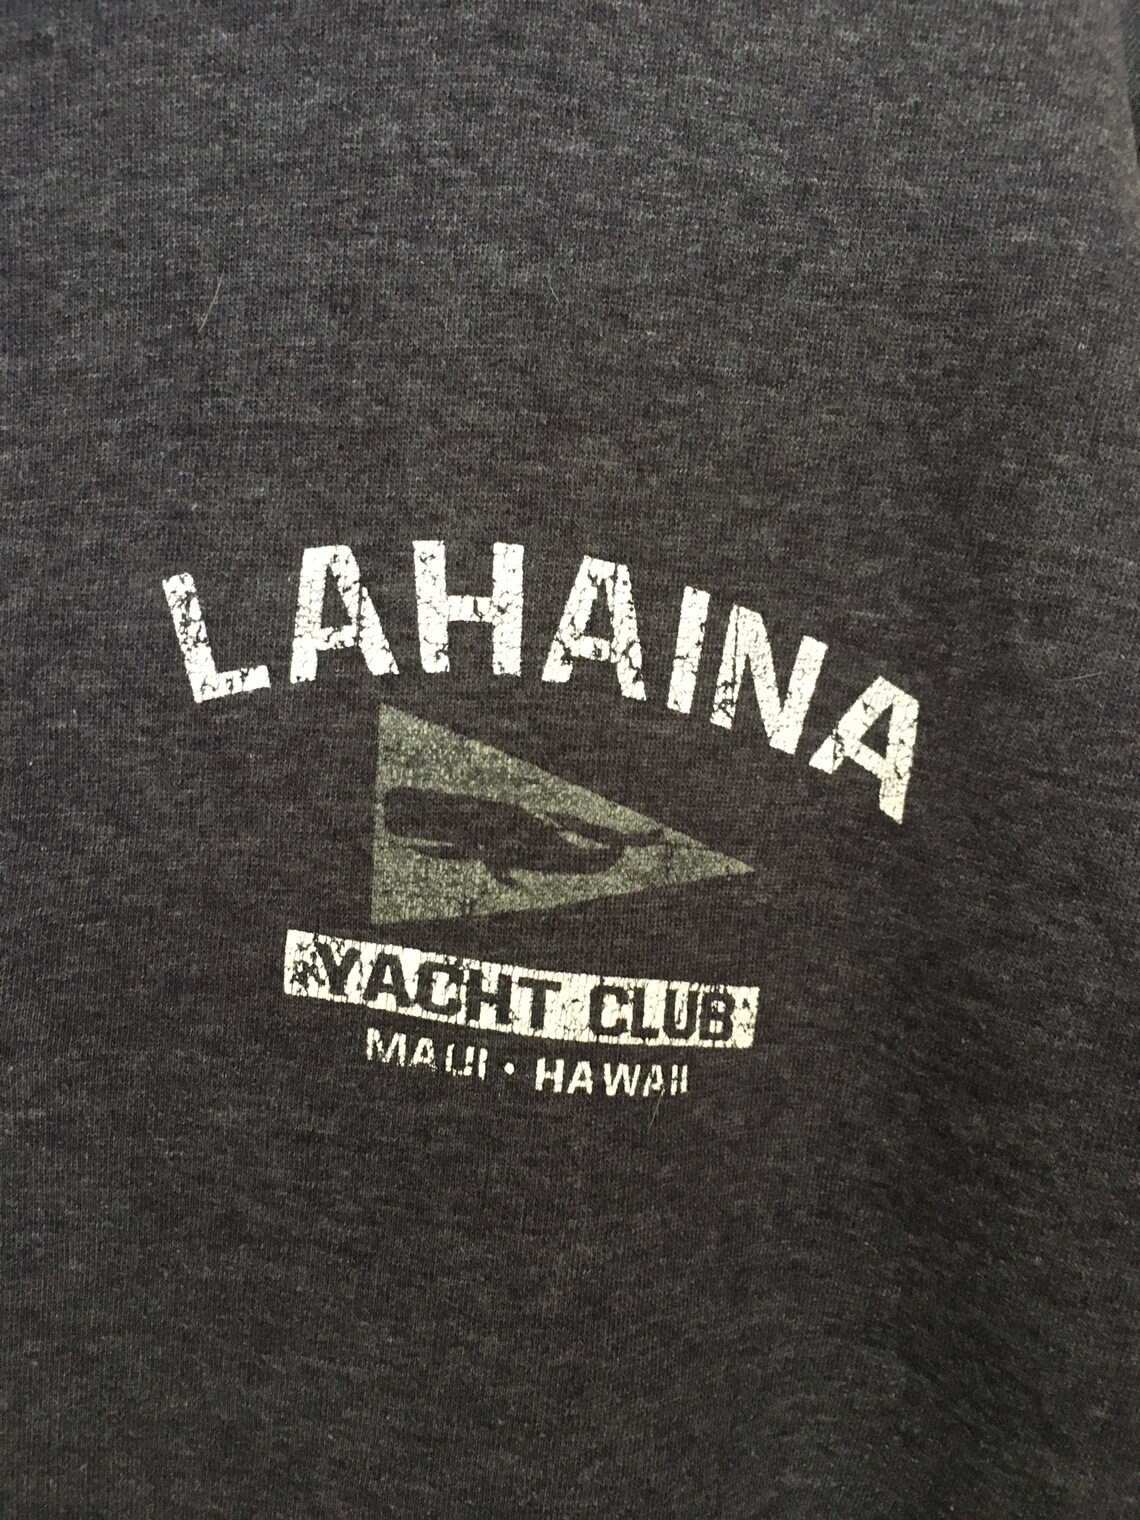 lahaina yacht club logo